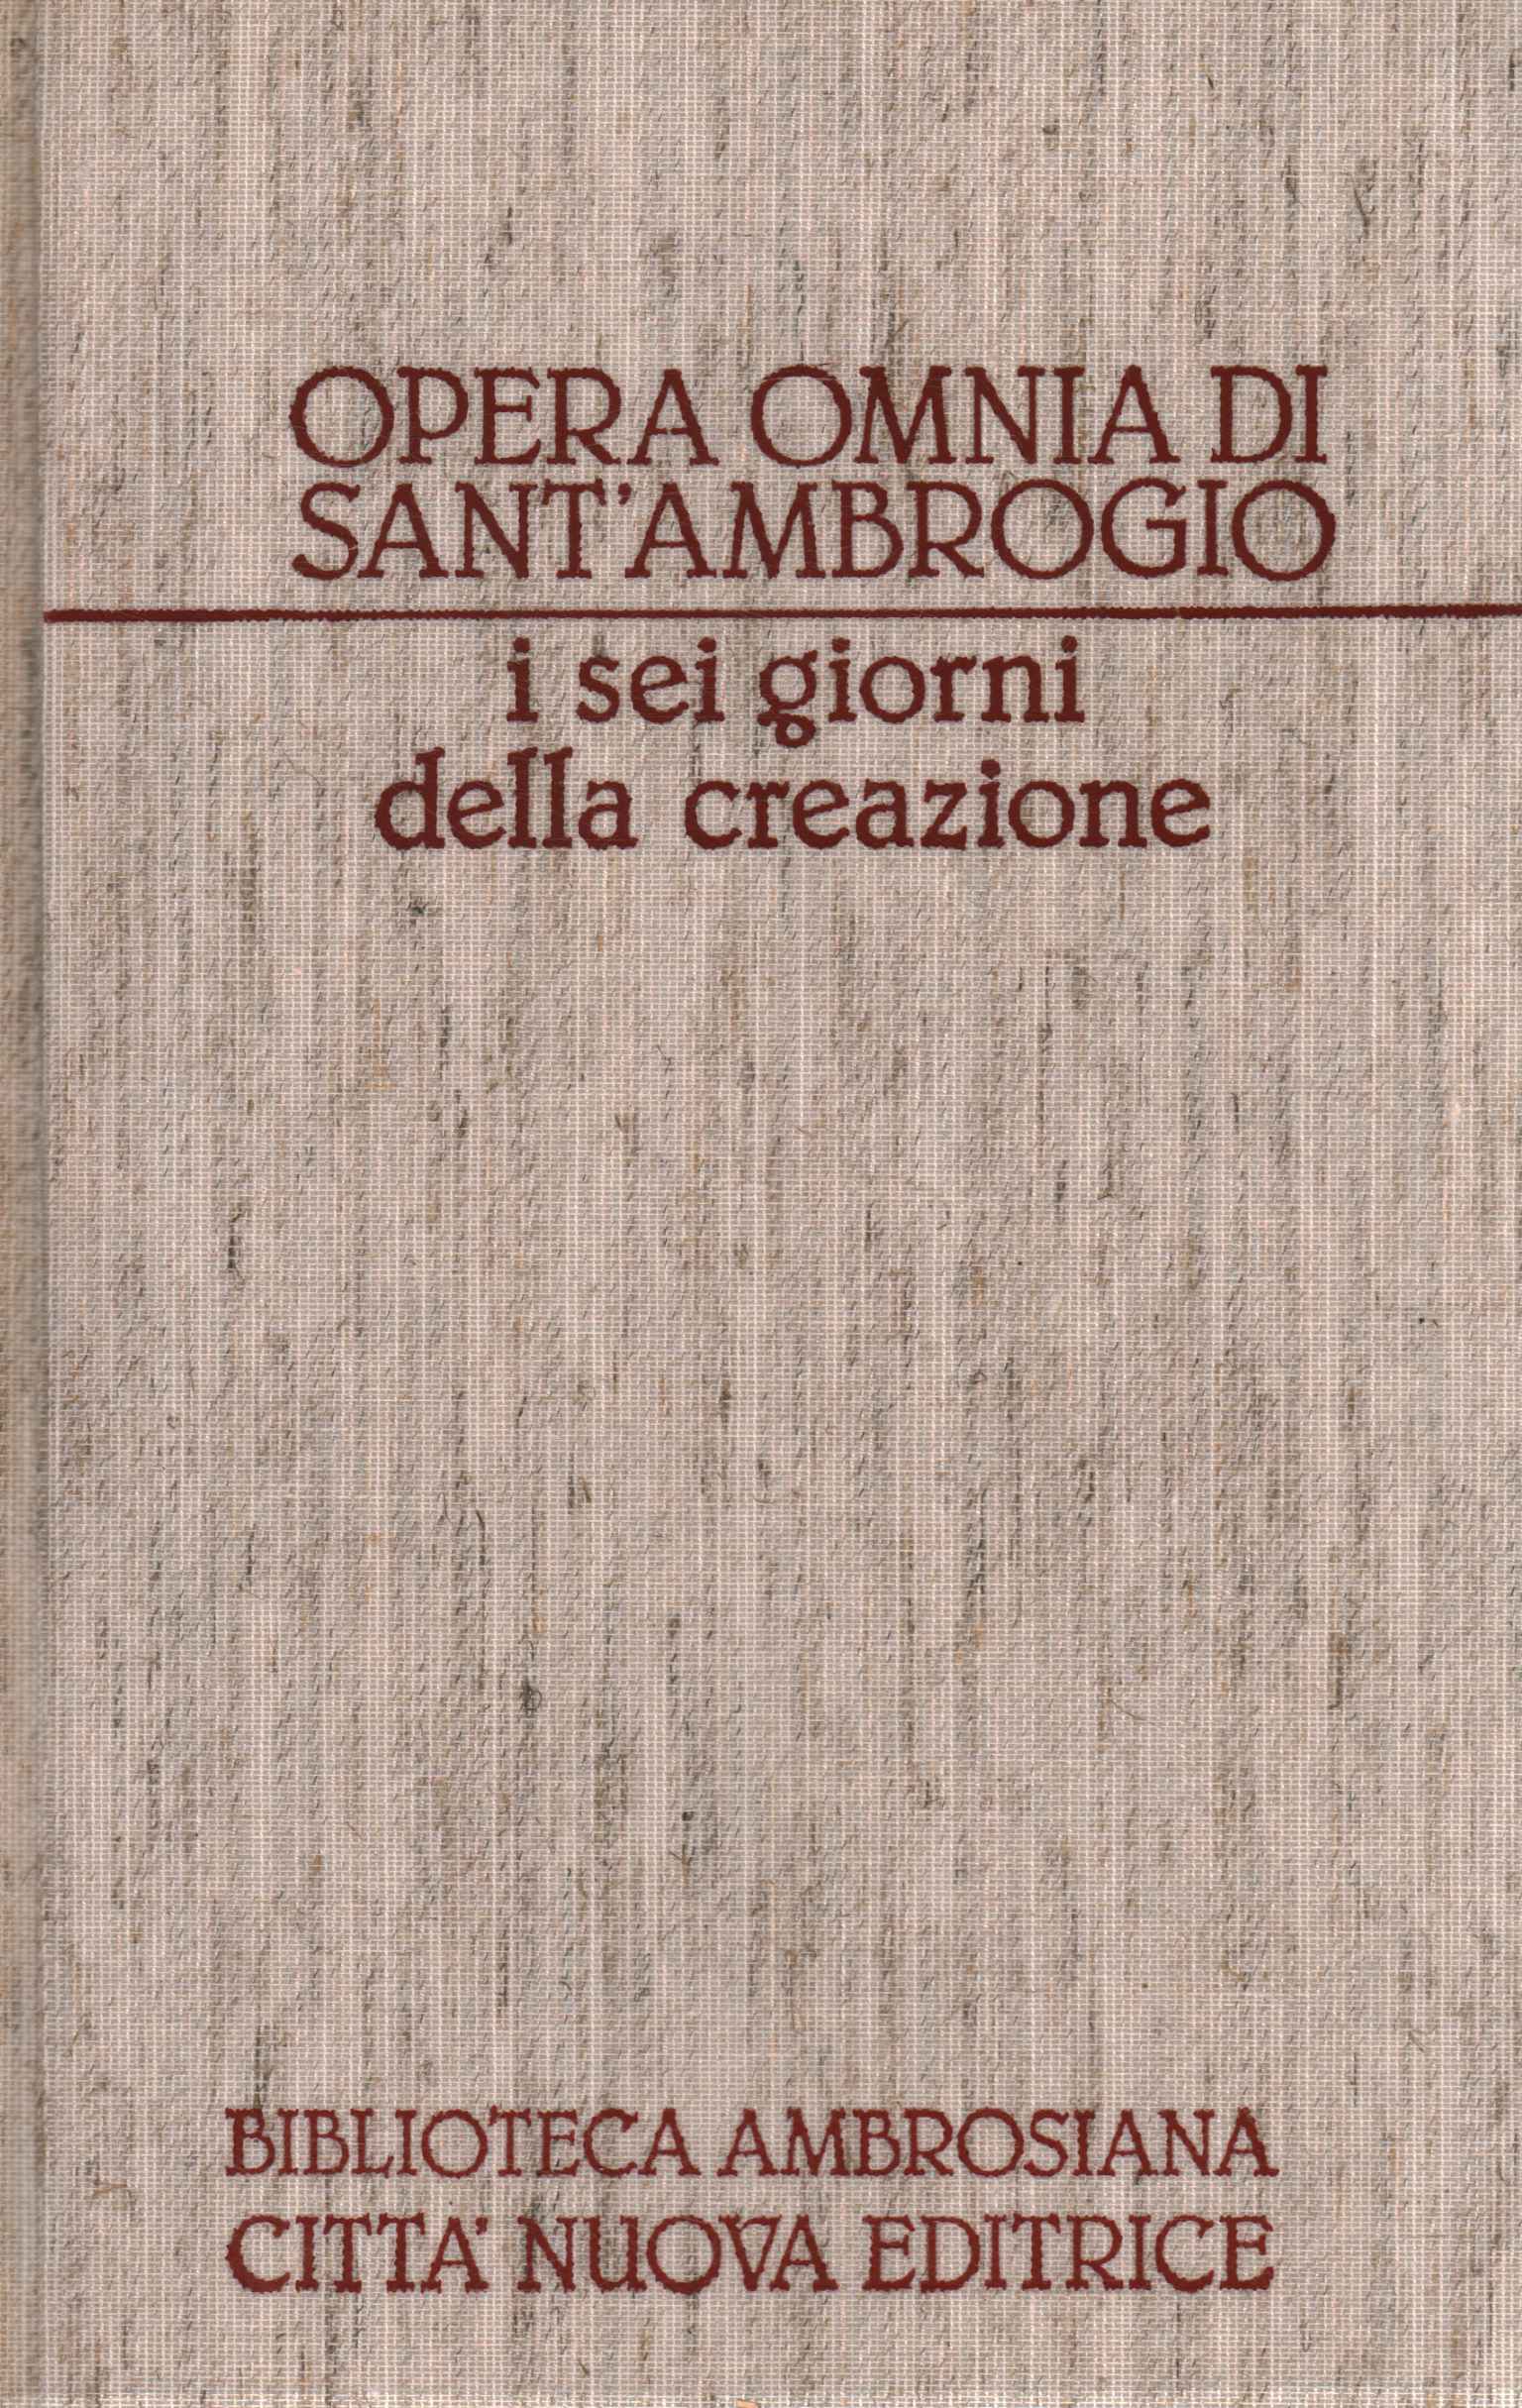 Opera Omnia of Sant'Ambrogio. OR